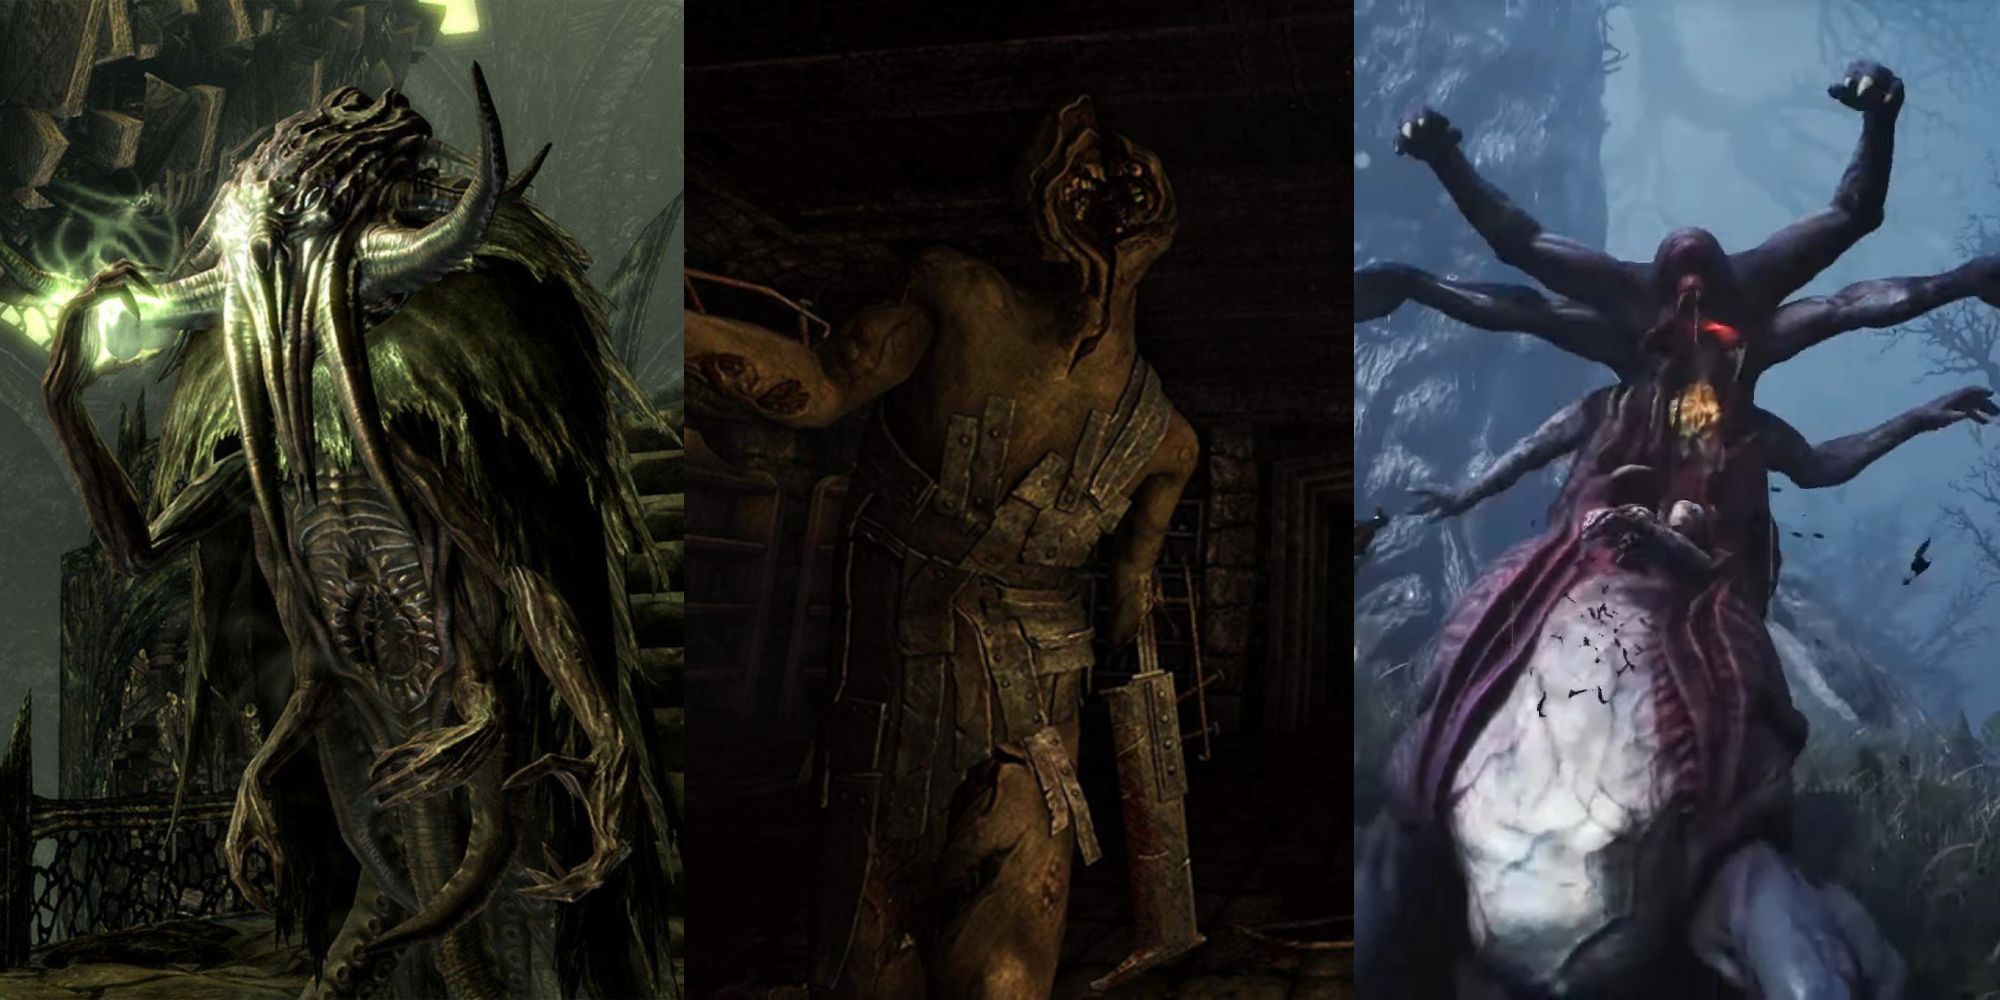 Melhores jogos de terror cósmico, monstros de imagem dividida classificados Call of Cthulhu, Amnesia Dark Descent Sinking City